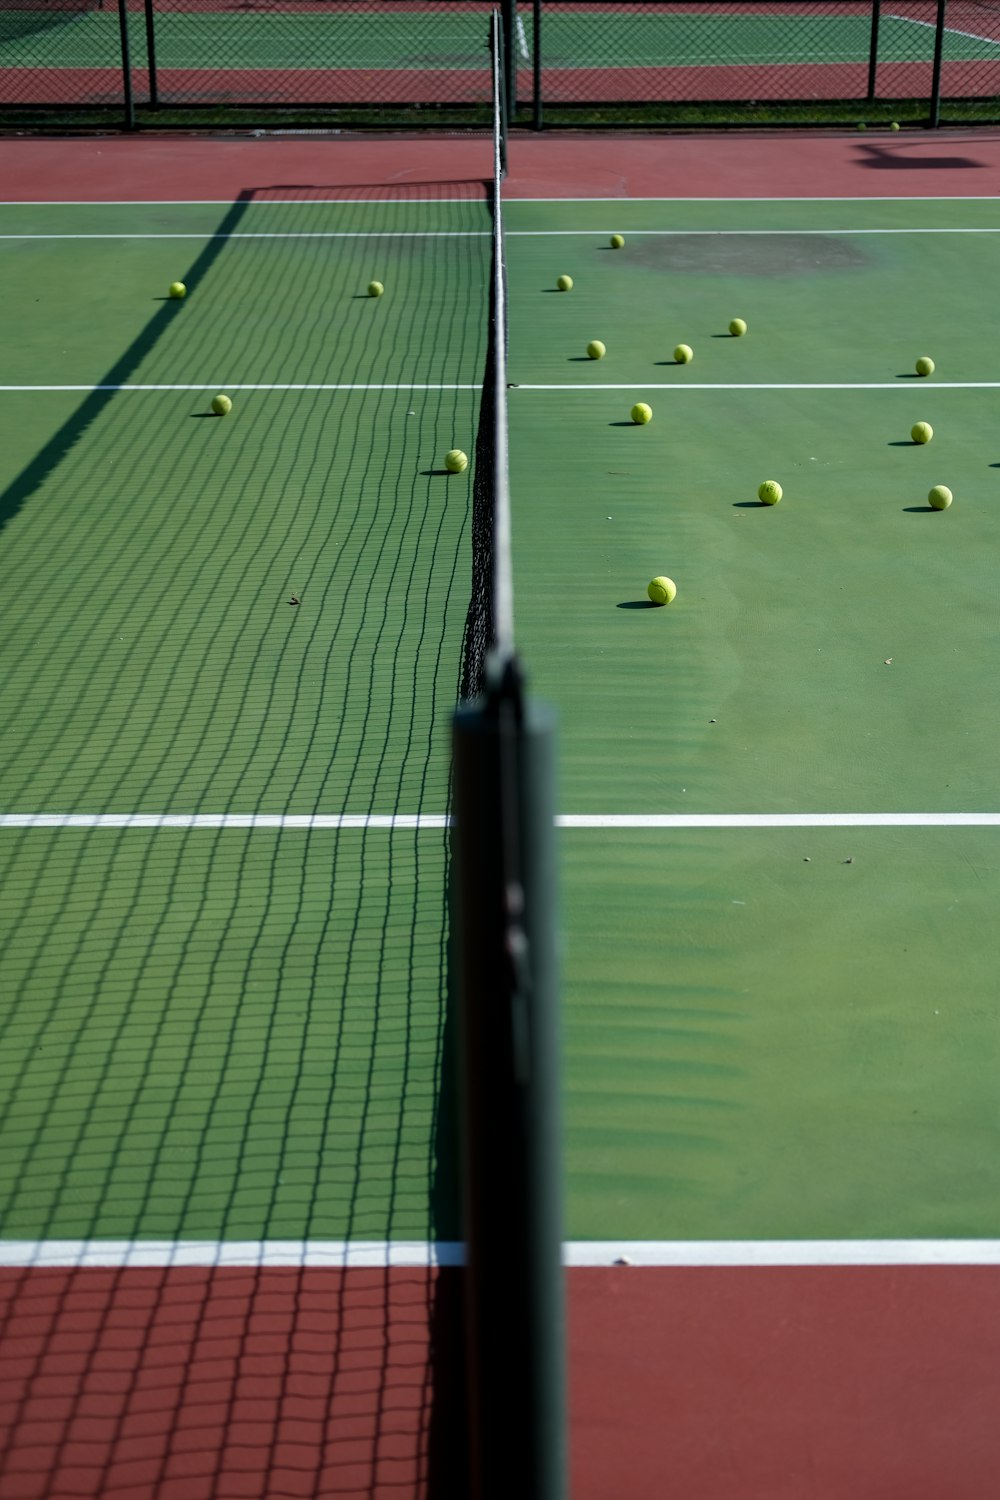 tennis balls on a court